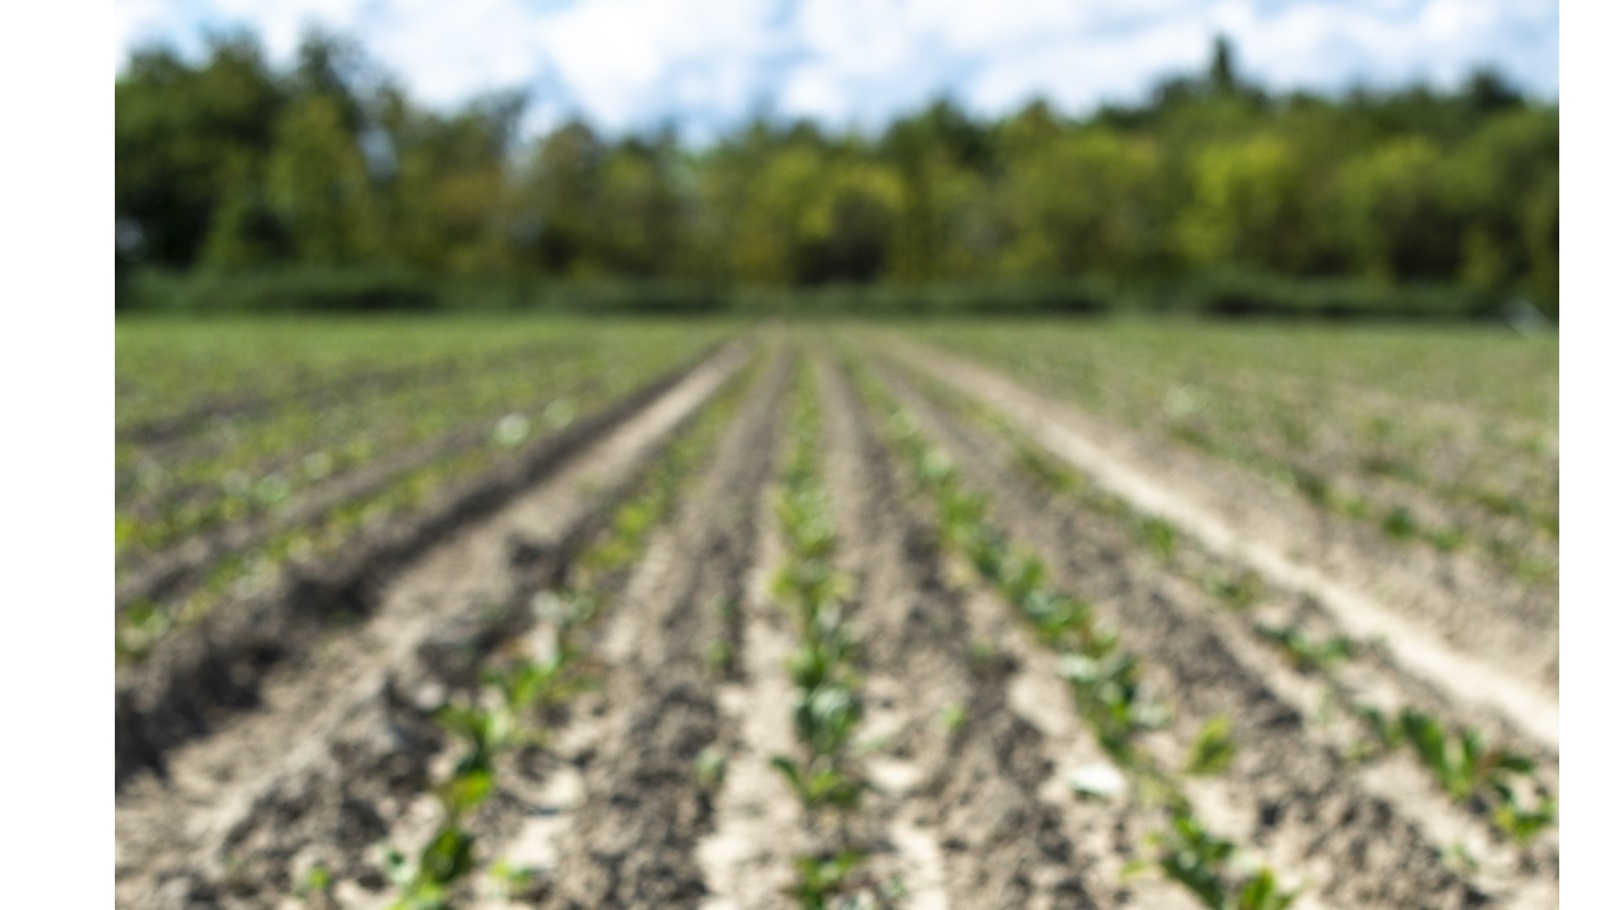 sugar-beet-plantation-in-a-row-2021-09-01-22-38-13-utc